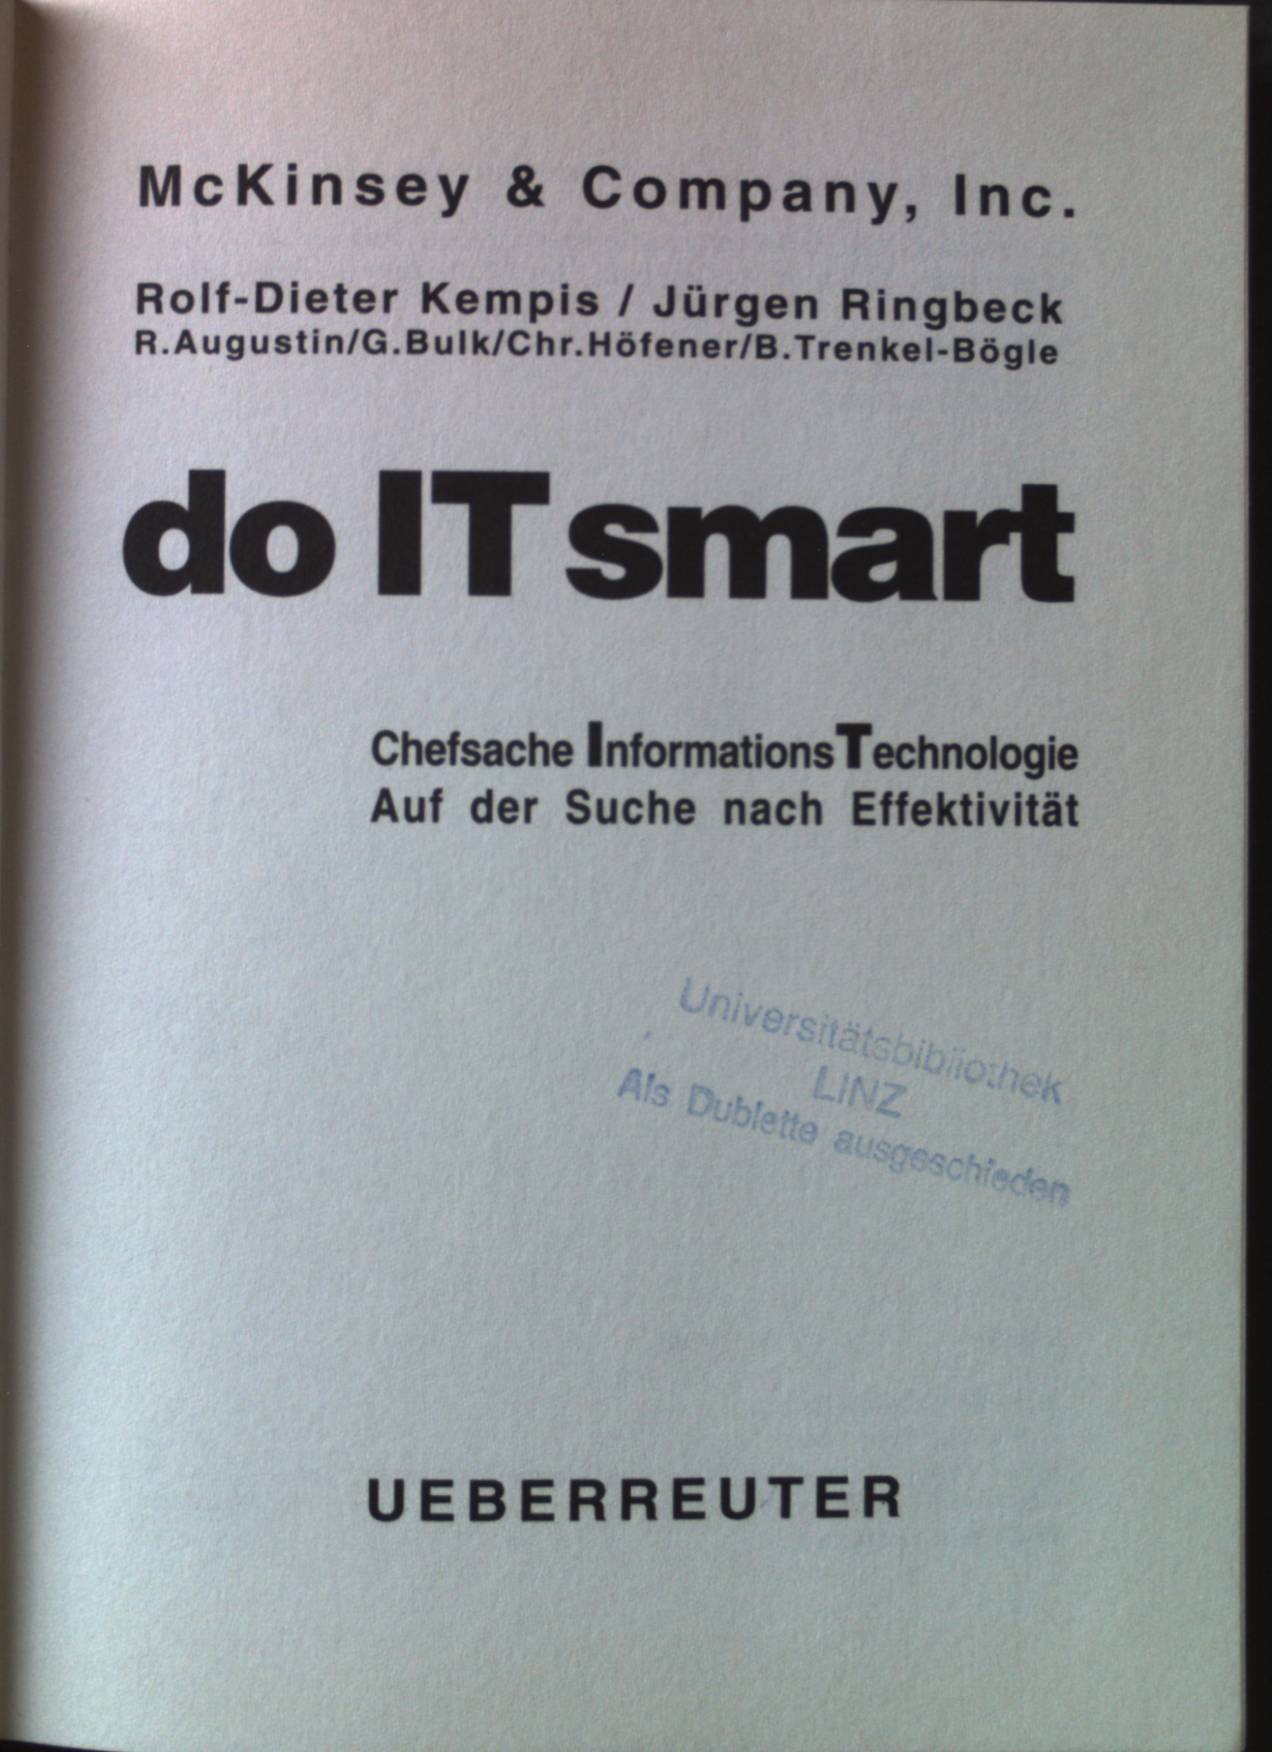 Do IT smart : Chefsache InformationsTechnologie ; auf der Suche nach Effektivität. - Kempis, Rolf-Dieter, Jürgen Ringbeck G. Bulk u. a.